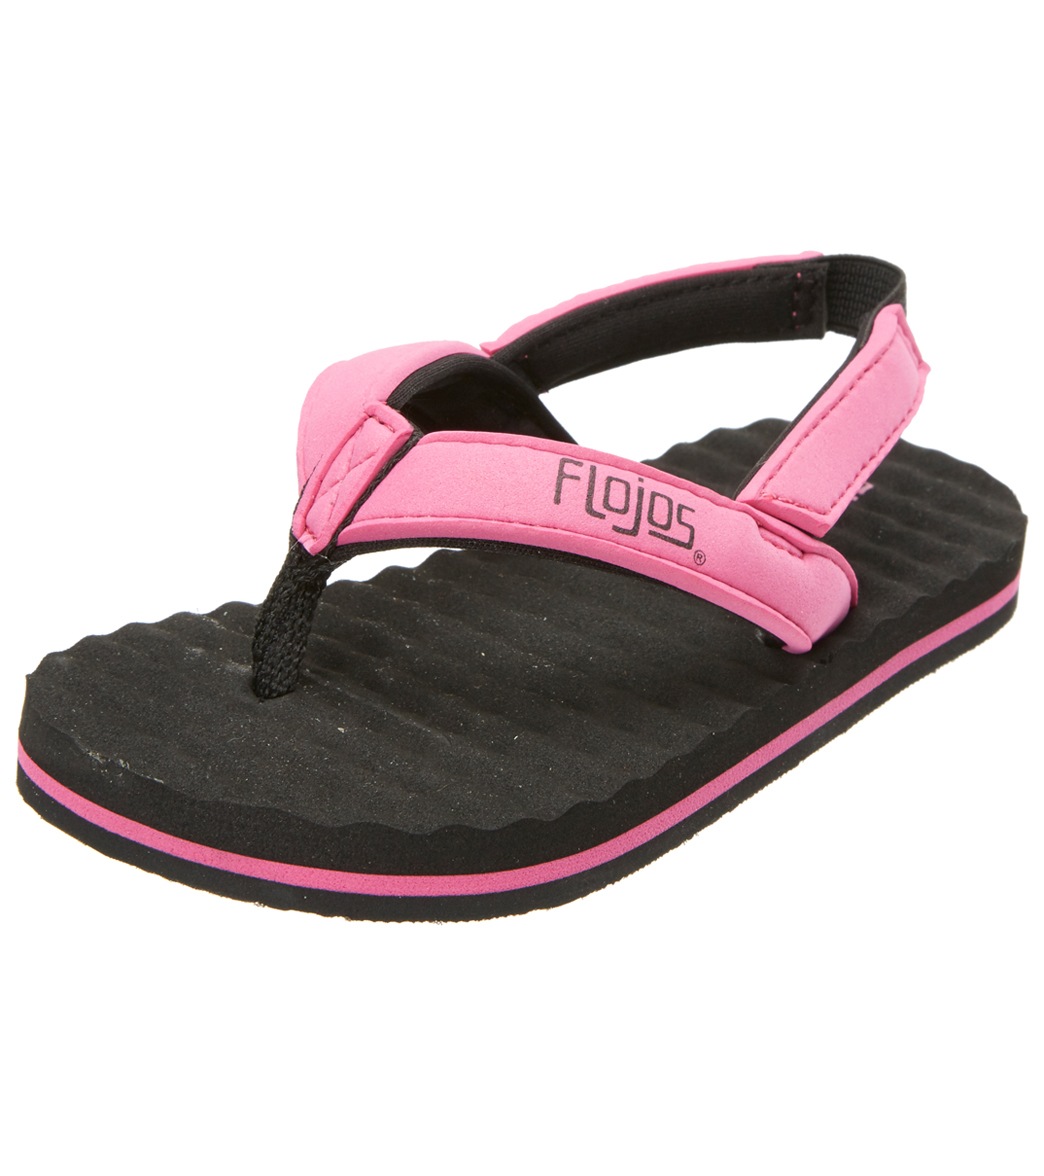 Flojos Girls' Tyke Sandals - Pink 8 Rubber - Swimoutlet.com